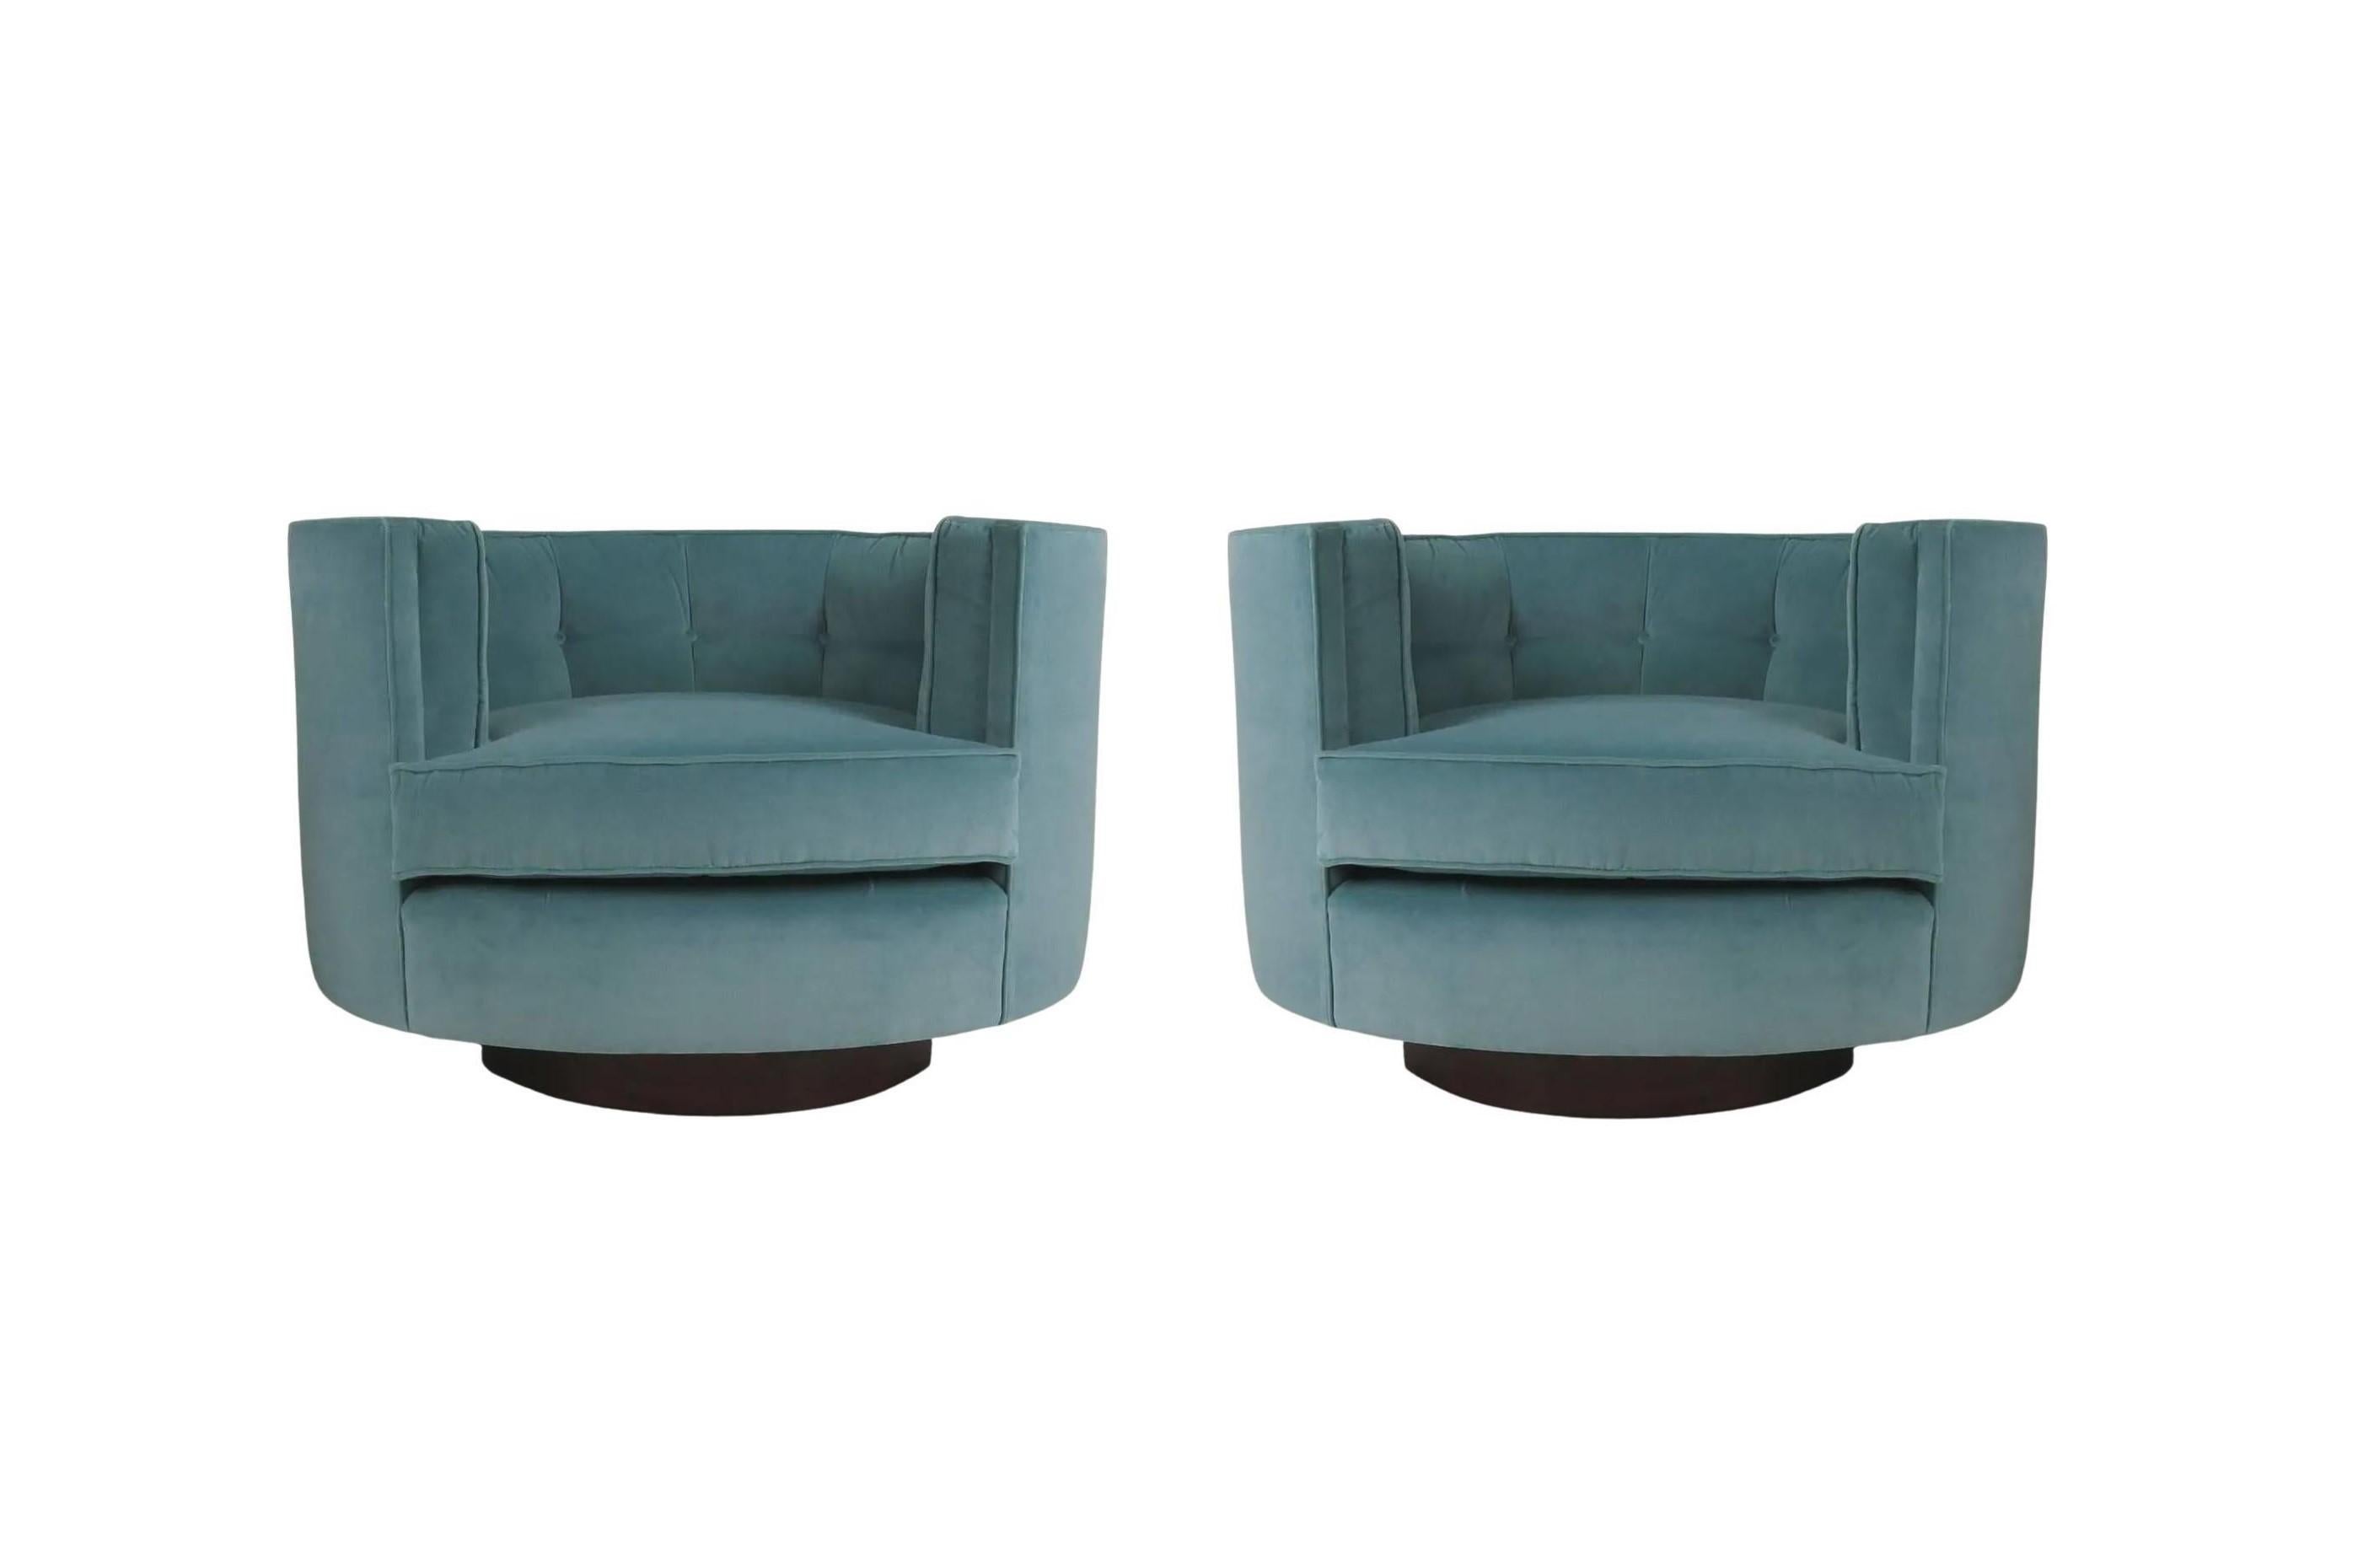 Une paire exemplaire et très rare de chaises pivotantes Flair tub dans le style de Milo Baughman, vers les années 1970. Sa signature, définie par des lignes épurées et une simplicité architecturale, exprime une conscience aiguë de l'évolution du